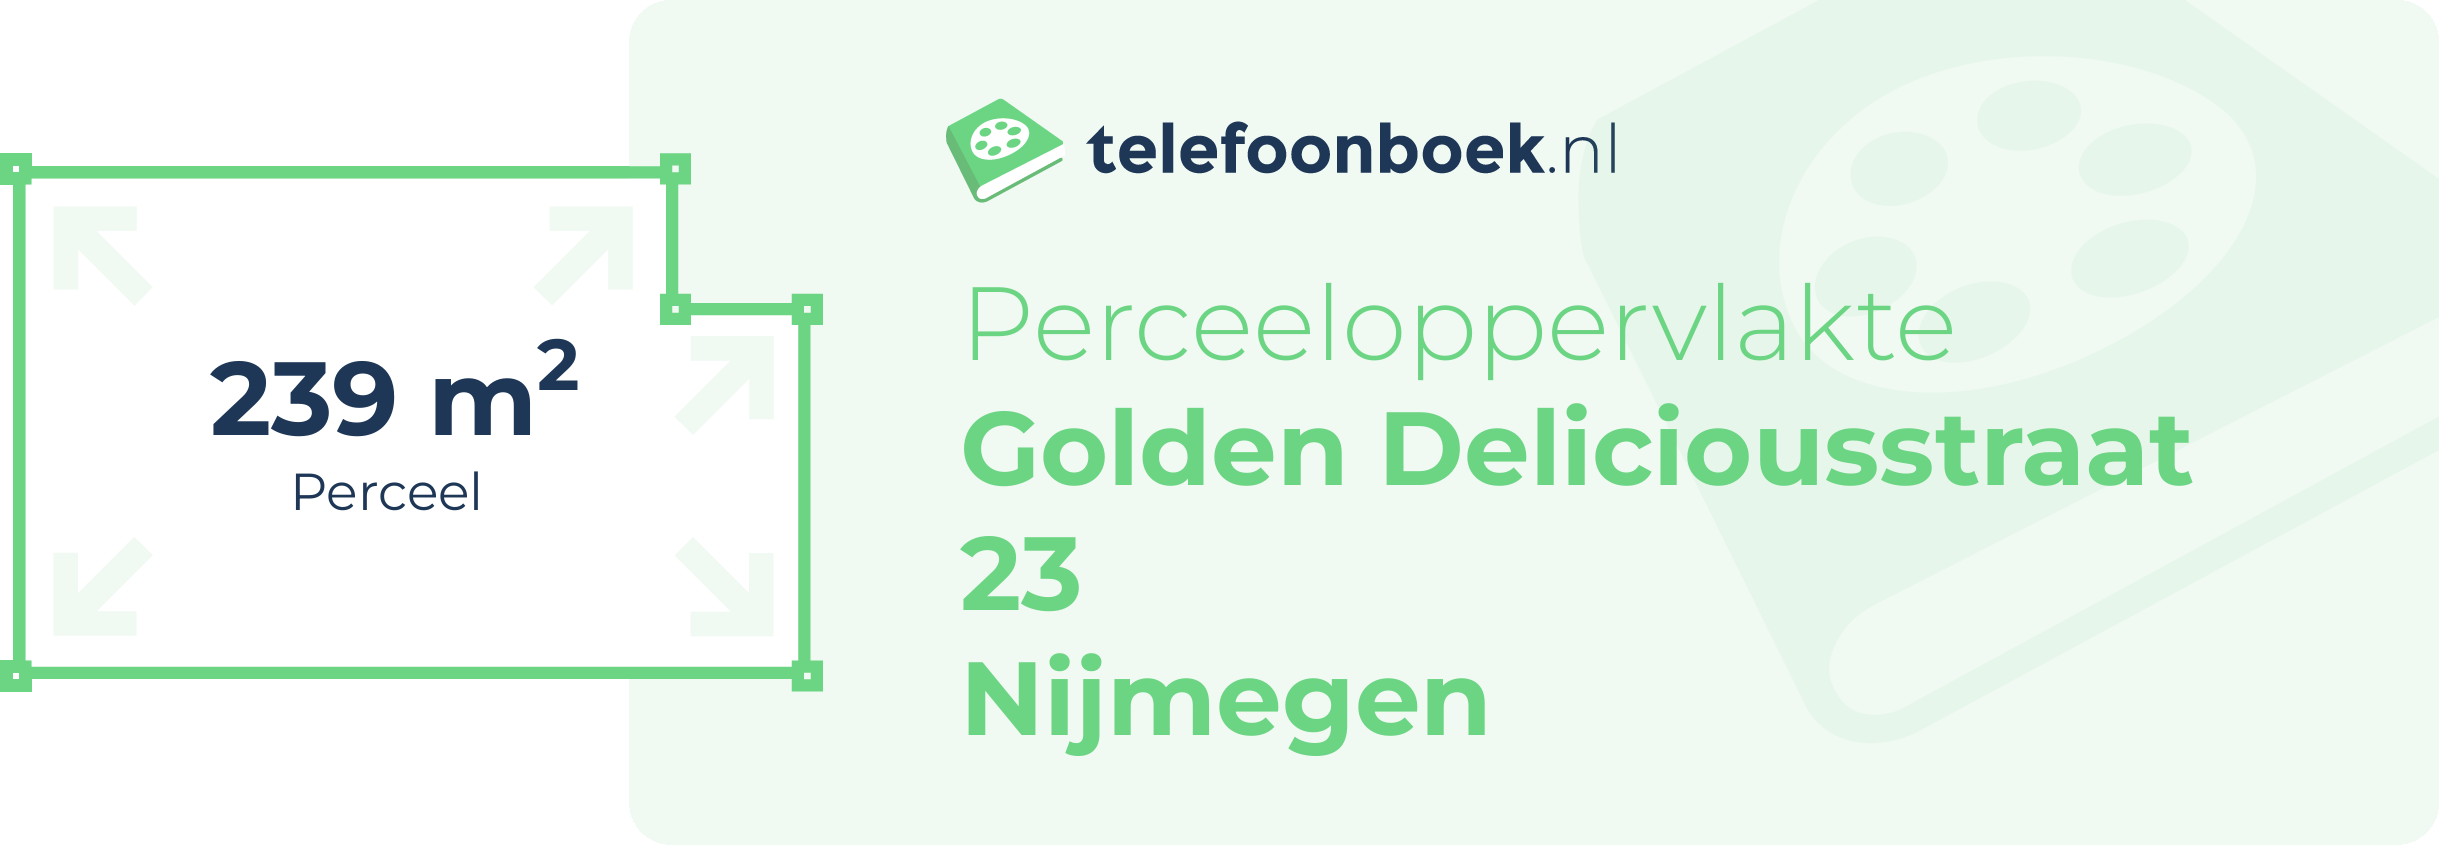 Perceeloppervlakte Golden Deliciousstraat 23 Nijmegen